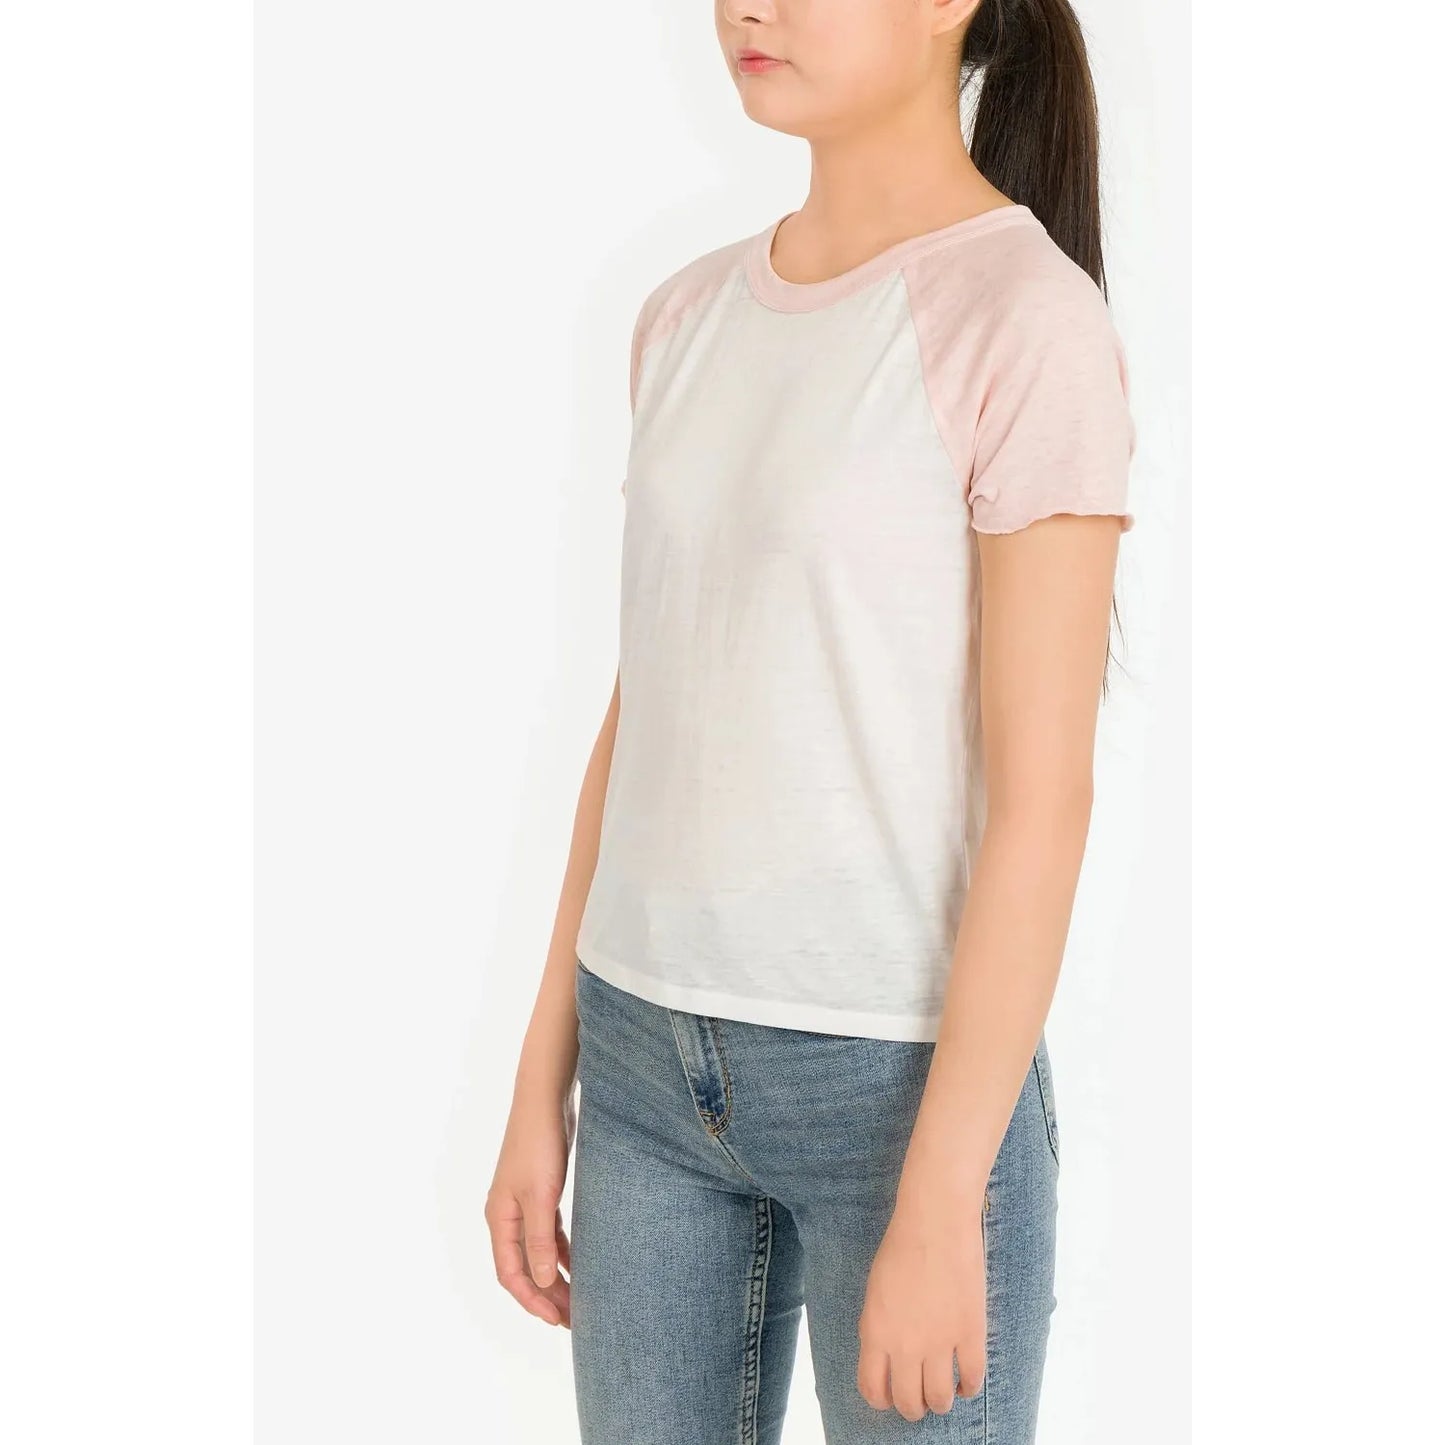 Hippie Rose Juniors Burnout Baseball T-Shirt, Pink, Size: XL